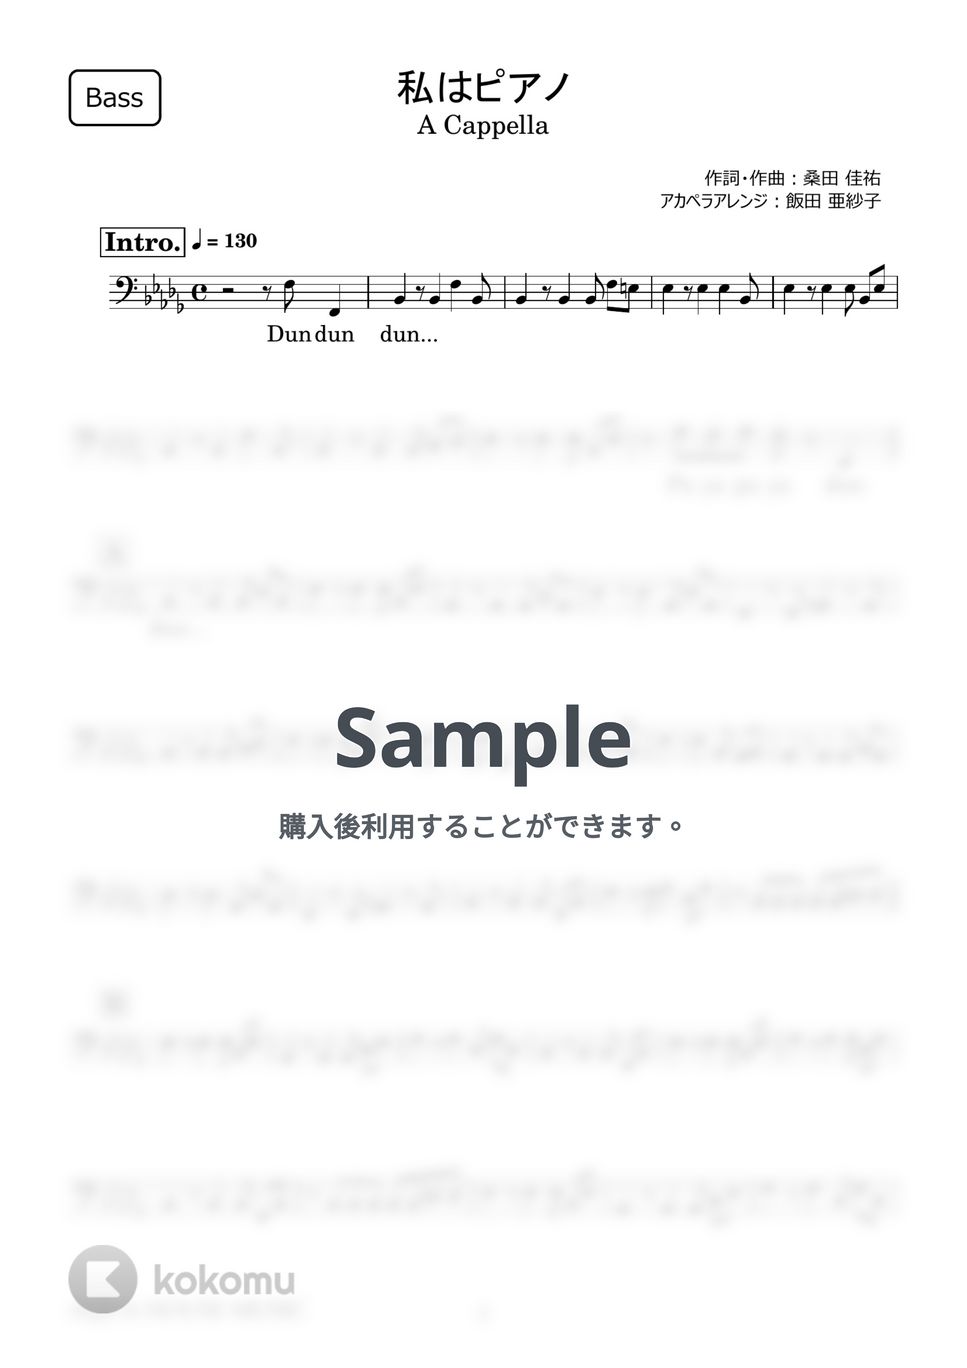 高田 みづえ - 私はピアノ (アカペラ楽譜♪Bassパート譜) by 飯田 亜紗子